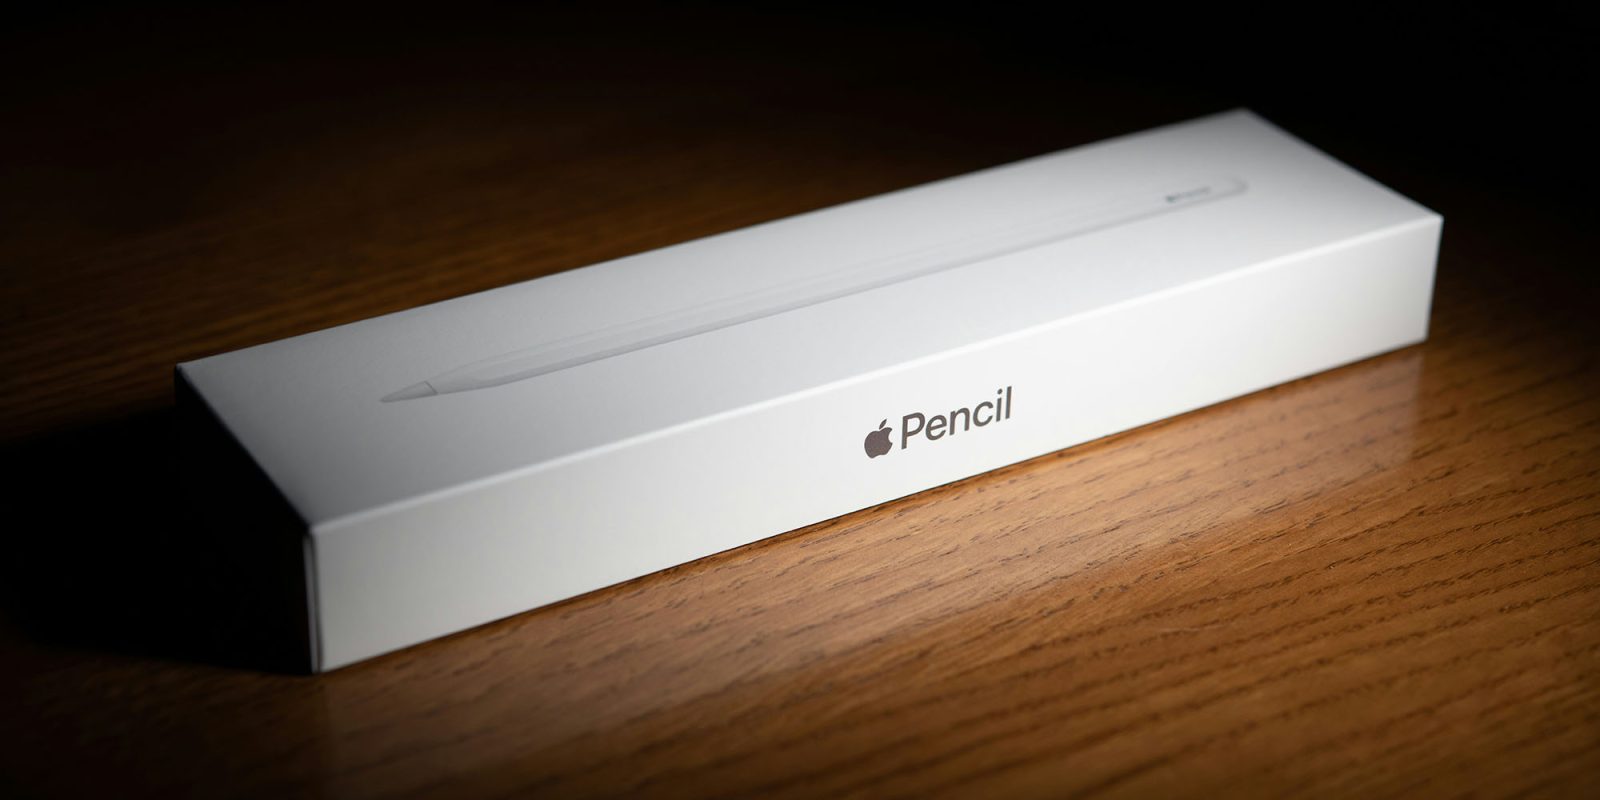 El Apple Pencil para Vision Pro parece estar respaldado por una solicitud de patente